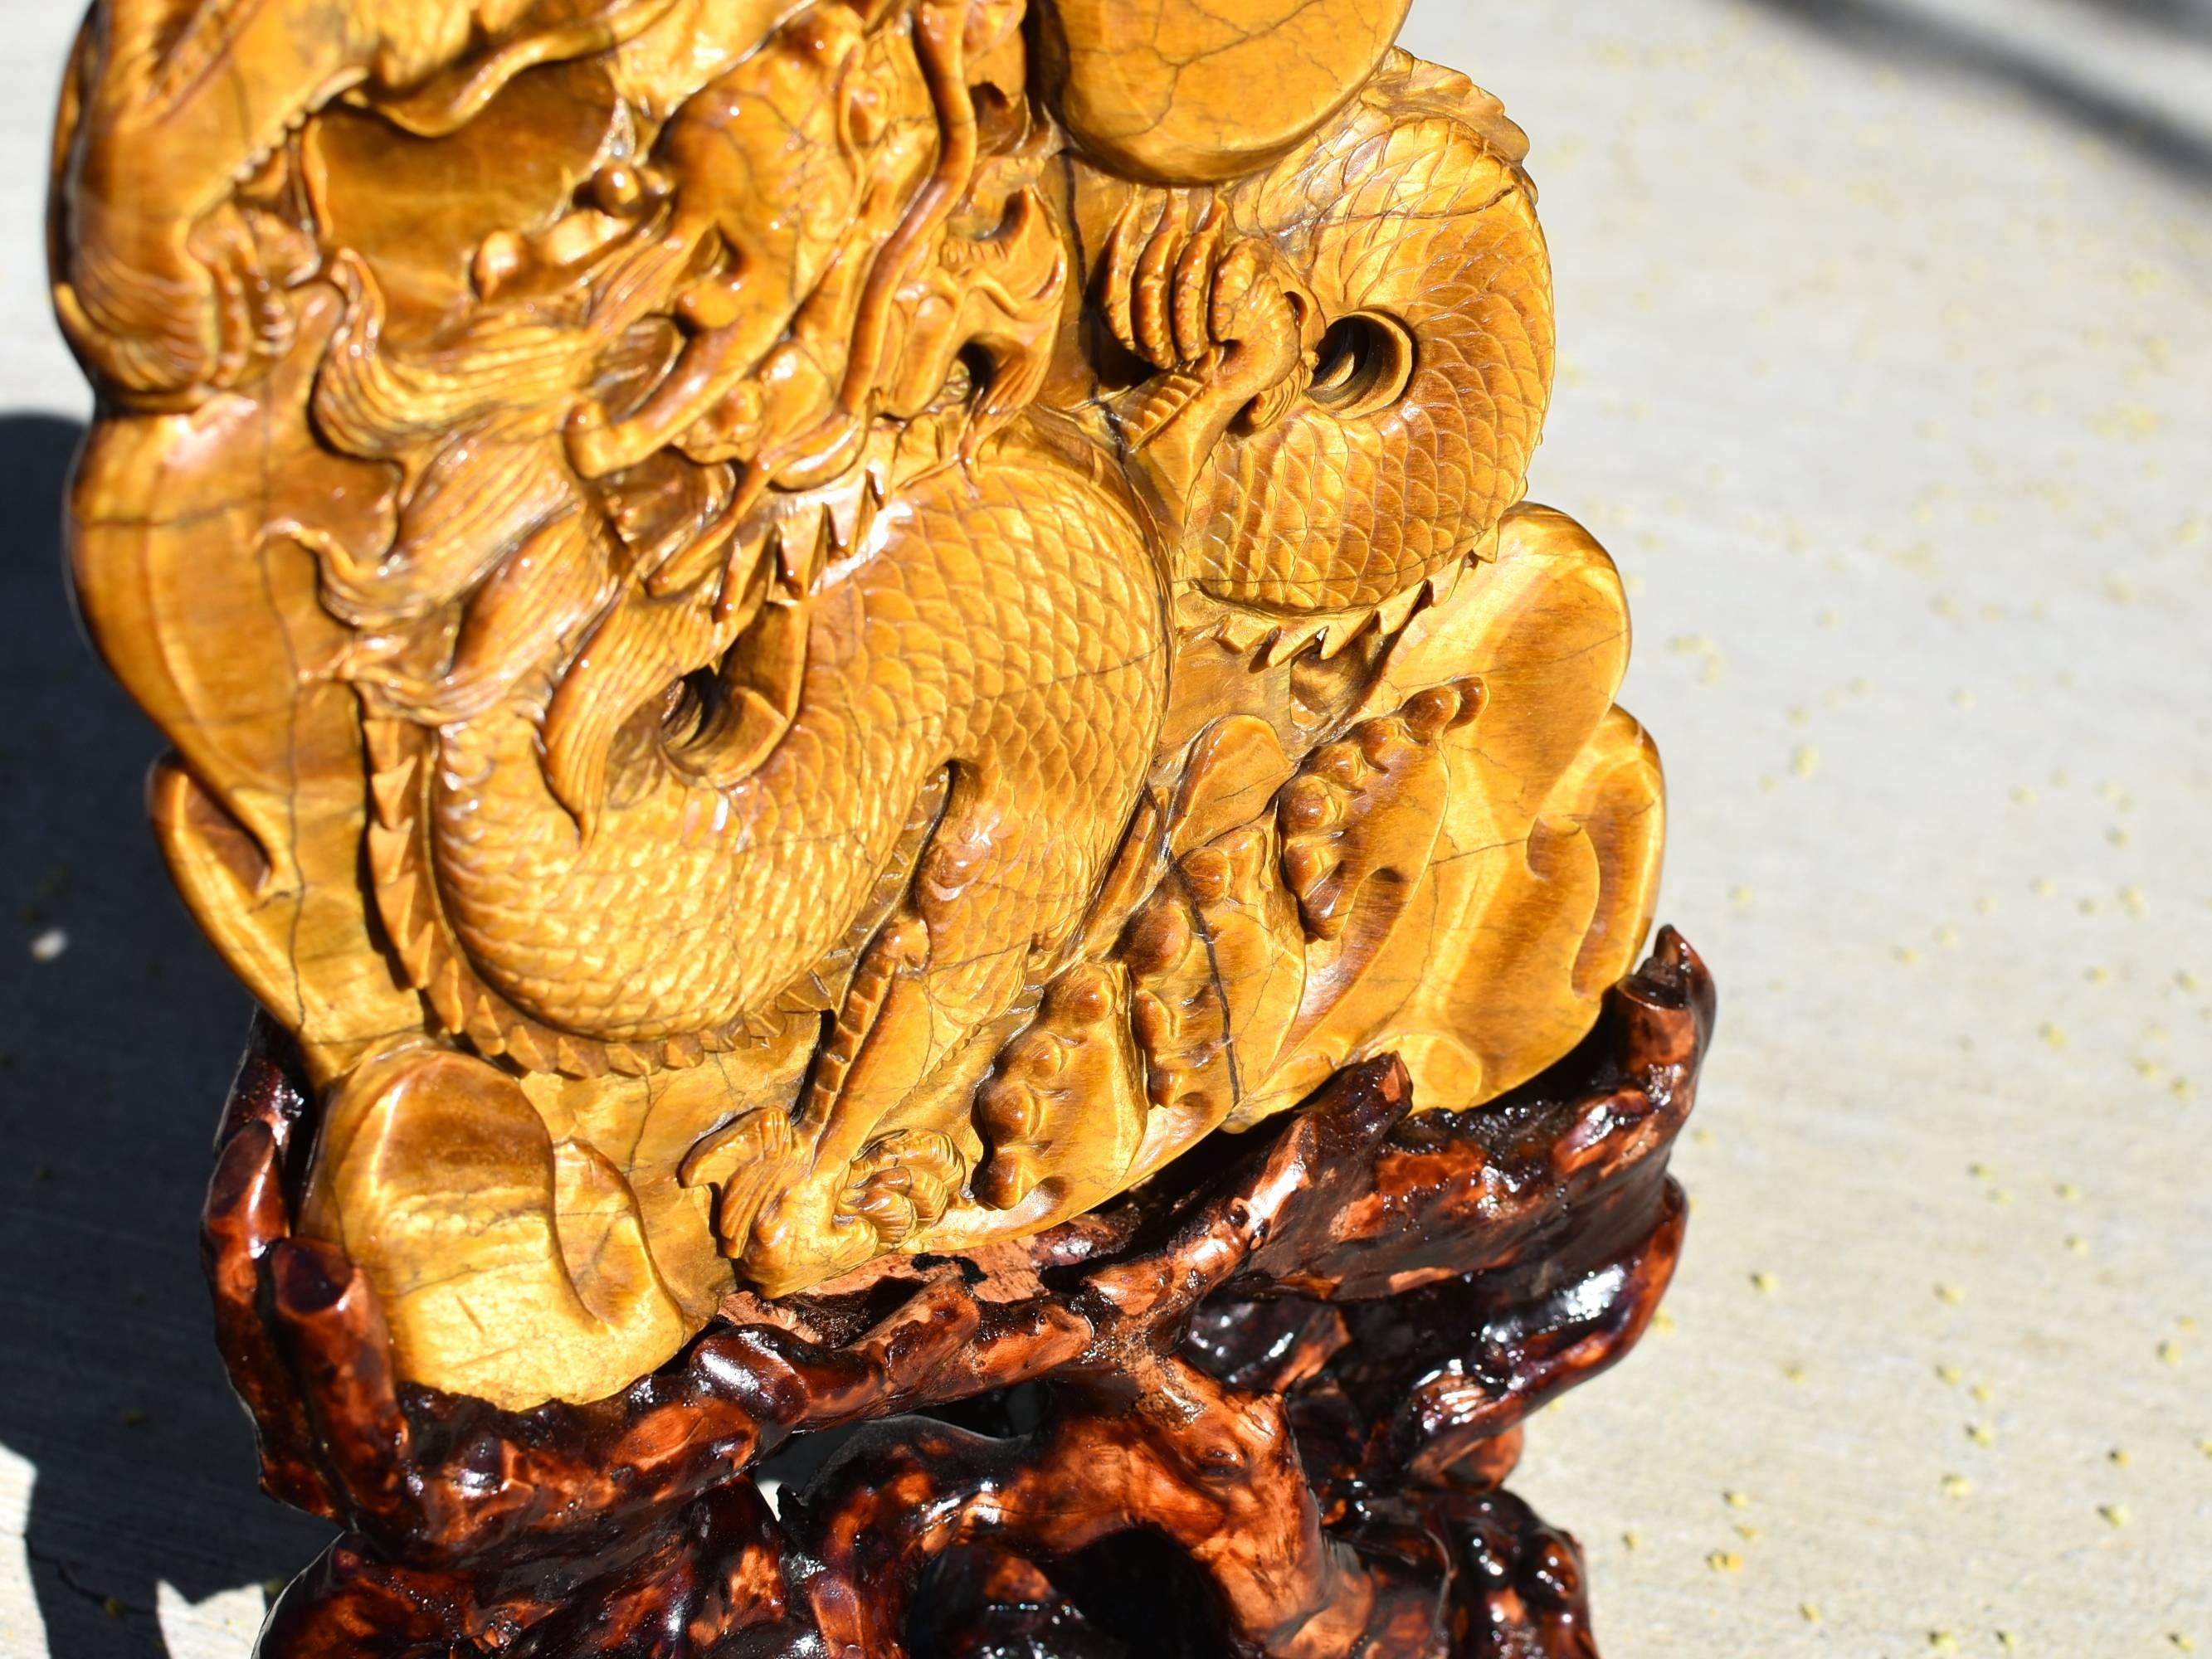 Multi-gemstone Huge Natural Tiger's Eye Dragon Statue, 3.4 lb, Hand-Carved Gemstone 